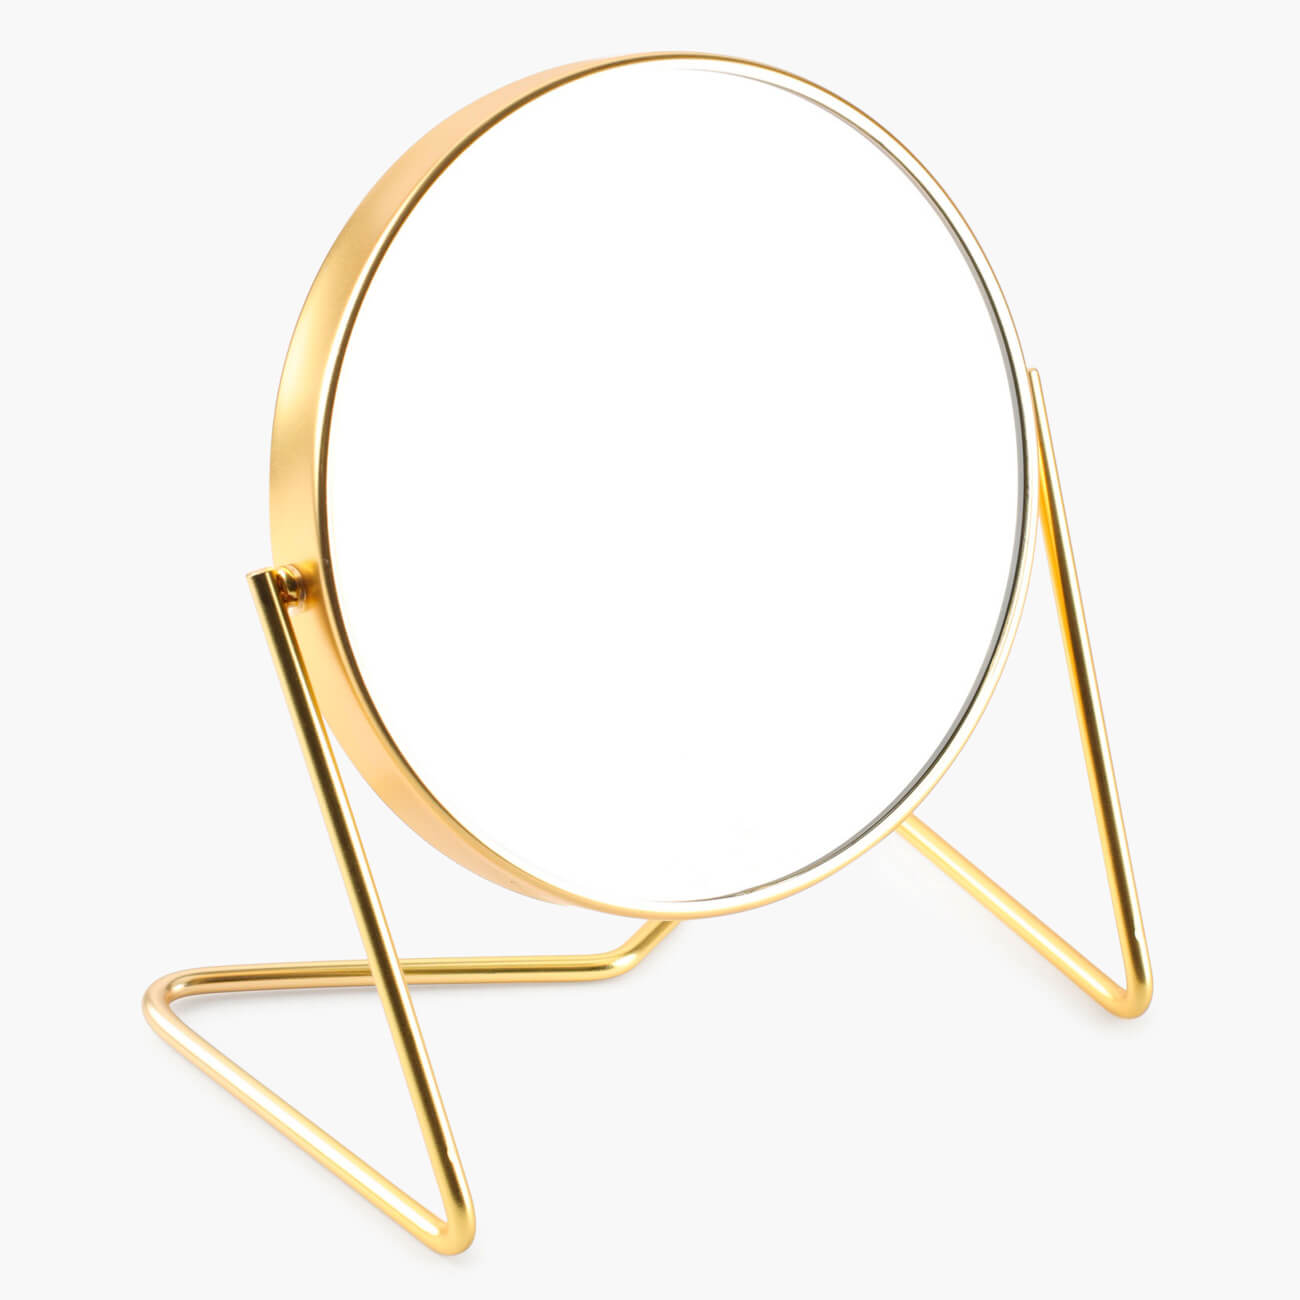 Зеркало настольное, 18 см, двустороннее, металл, круглое, золотистое, Trend зеркало косметическое настольное swensa двустороннее 17 см золотой